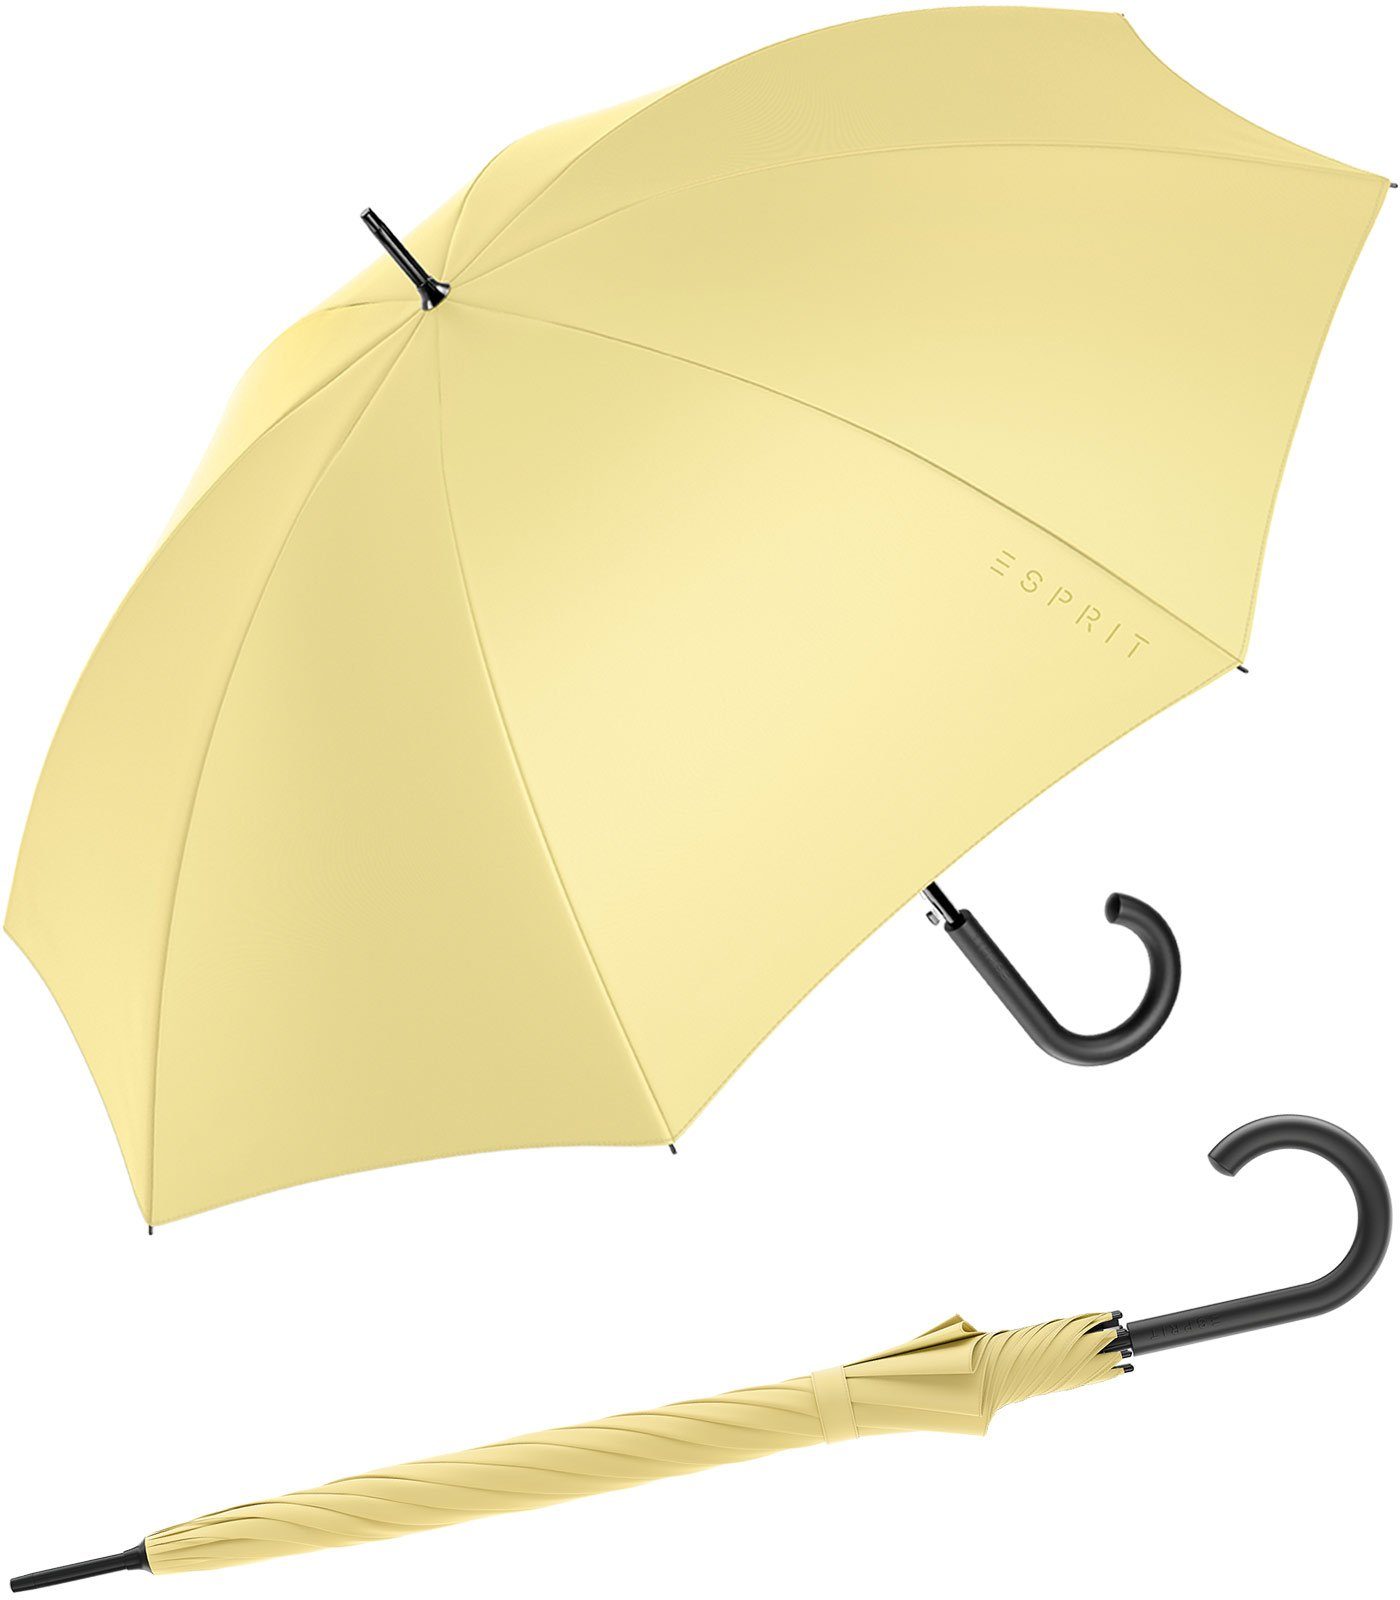 Esprit Stockregenschirm Damen-Regenschirm mit Automatik FJ 2022, groß und stabil, in den Trendfarben gelb